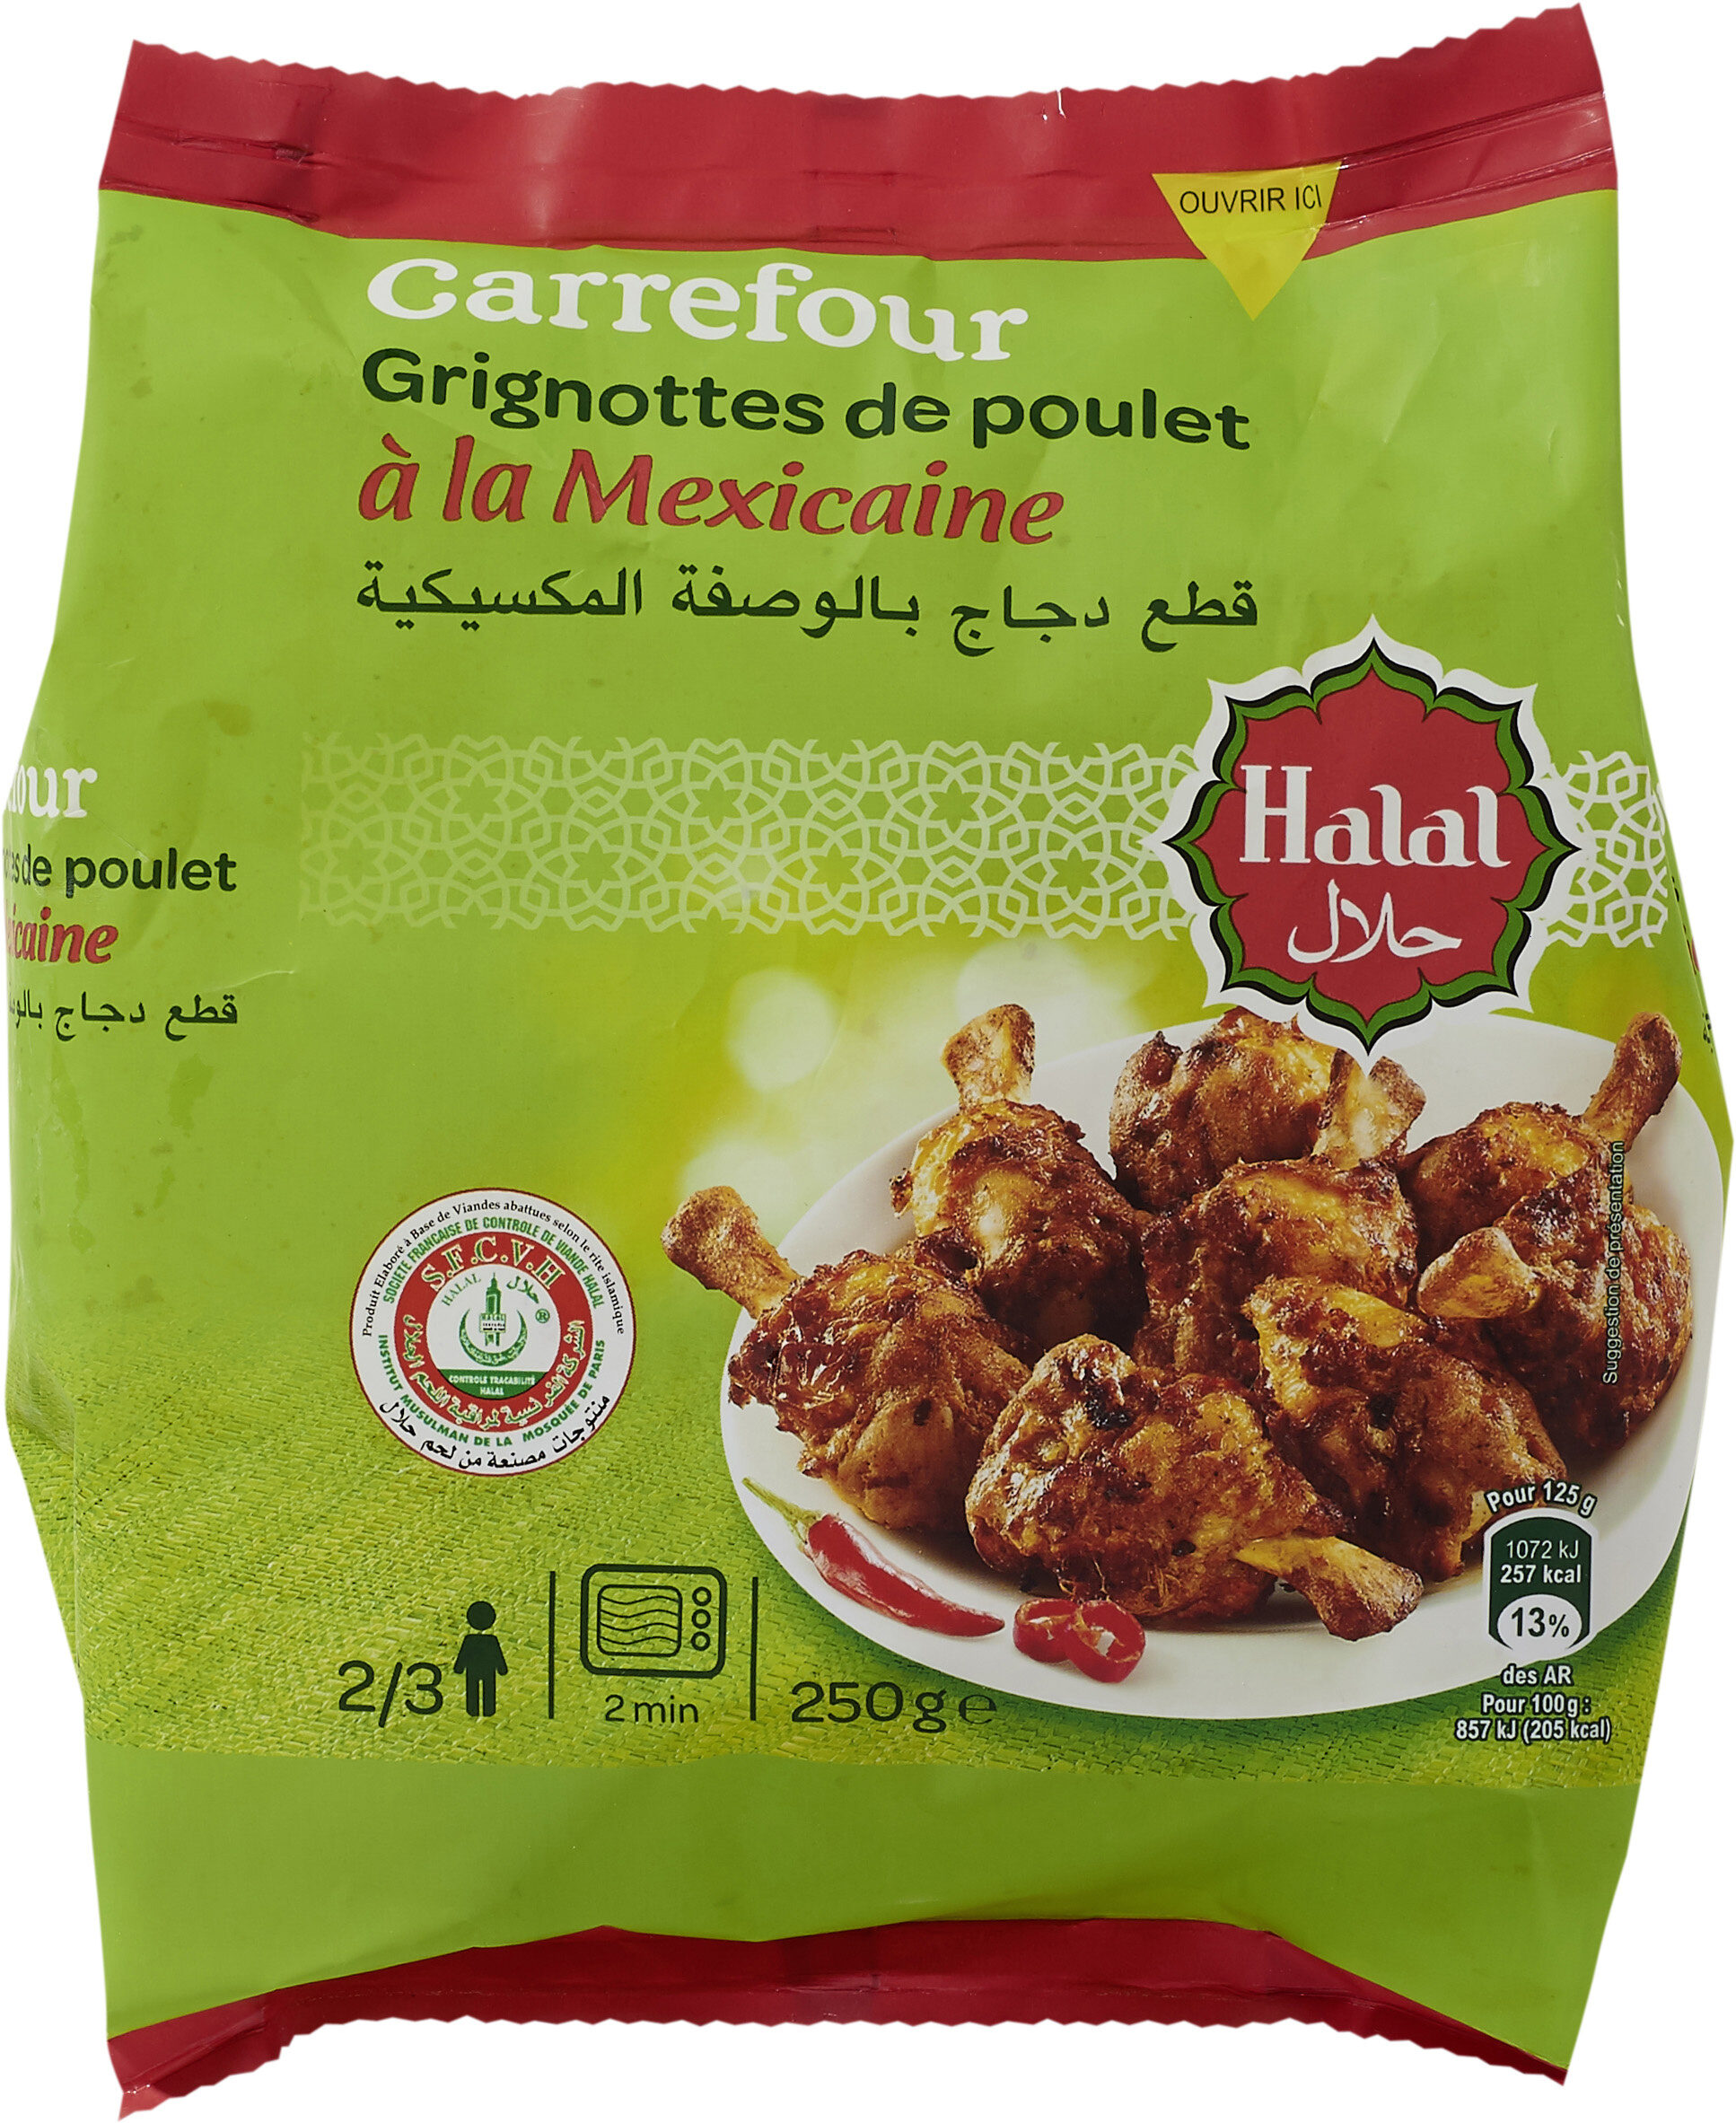 Grignottes de Poulet à la Mexicaine Halal - Product - fr